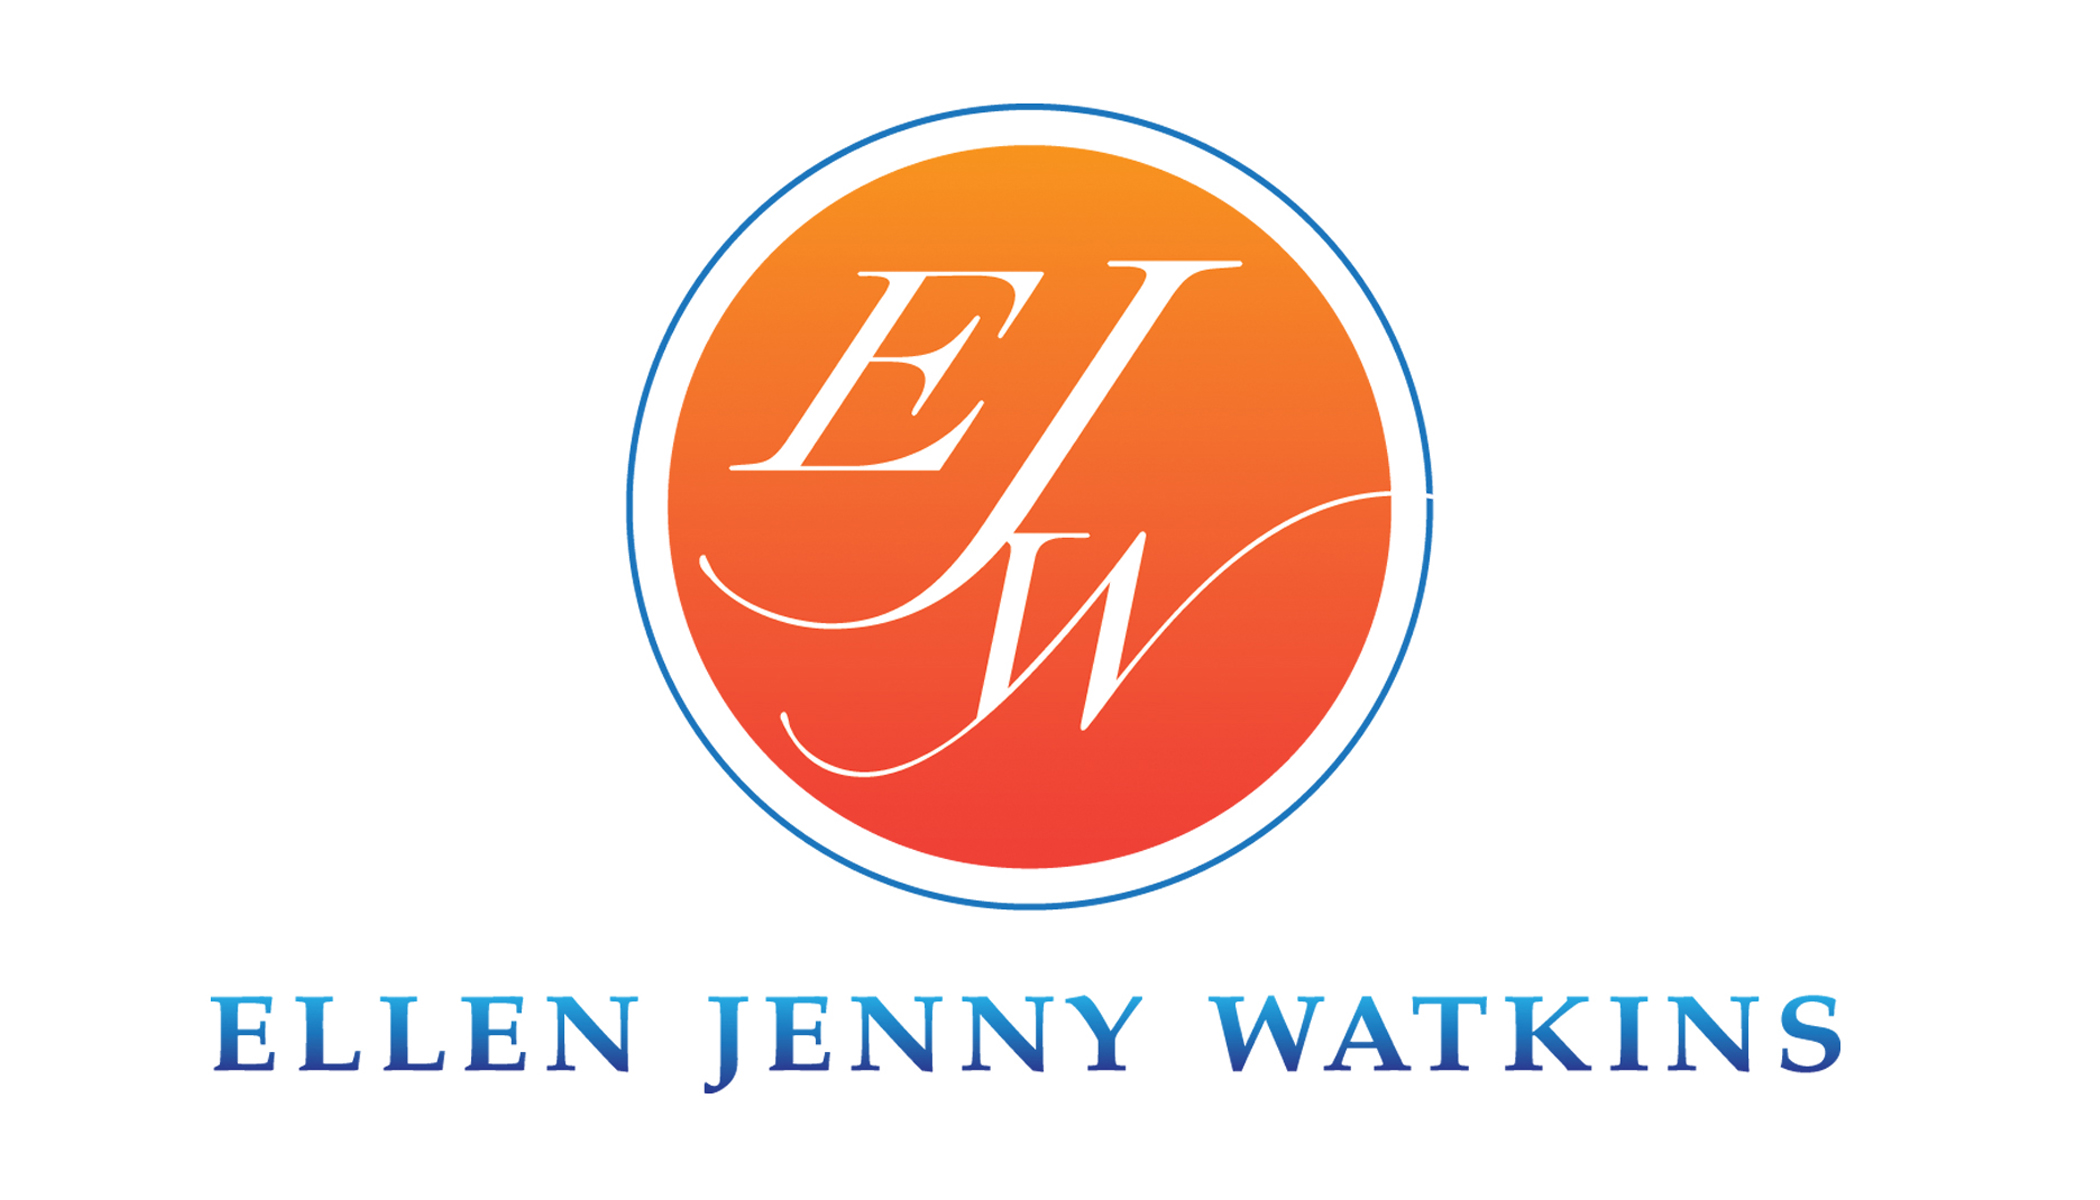 EllenJennyWatkins_Logos.jpg